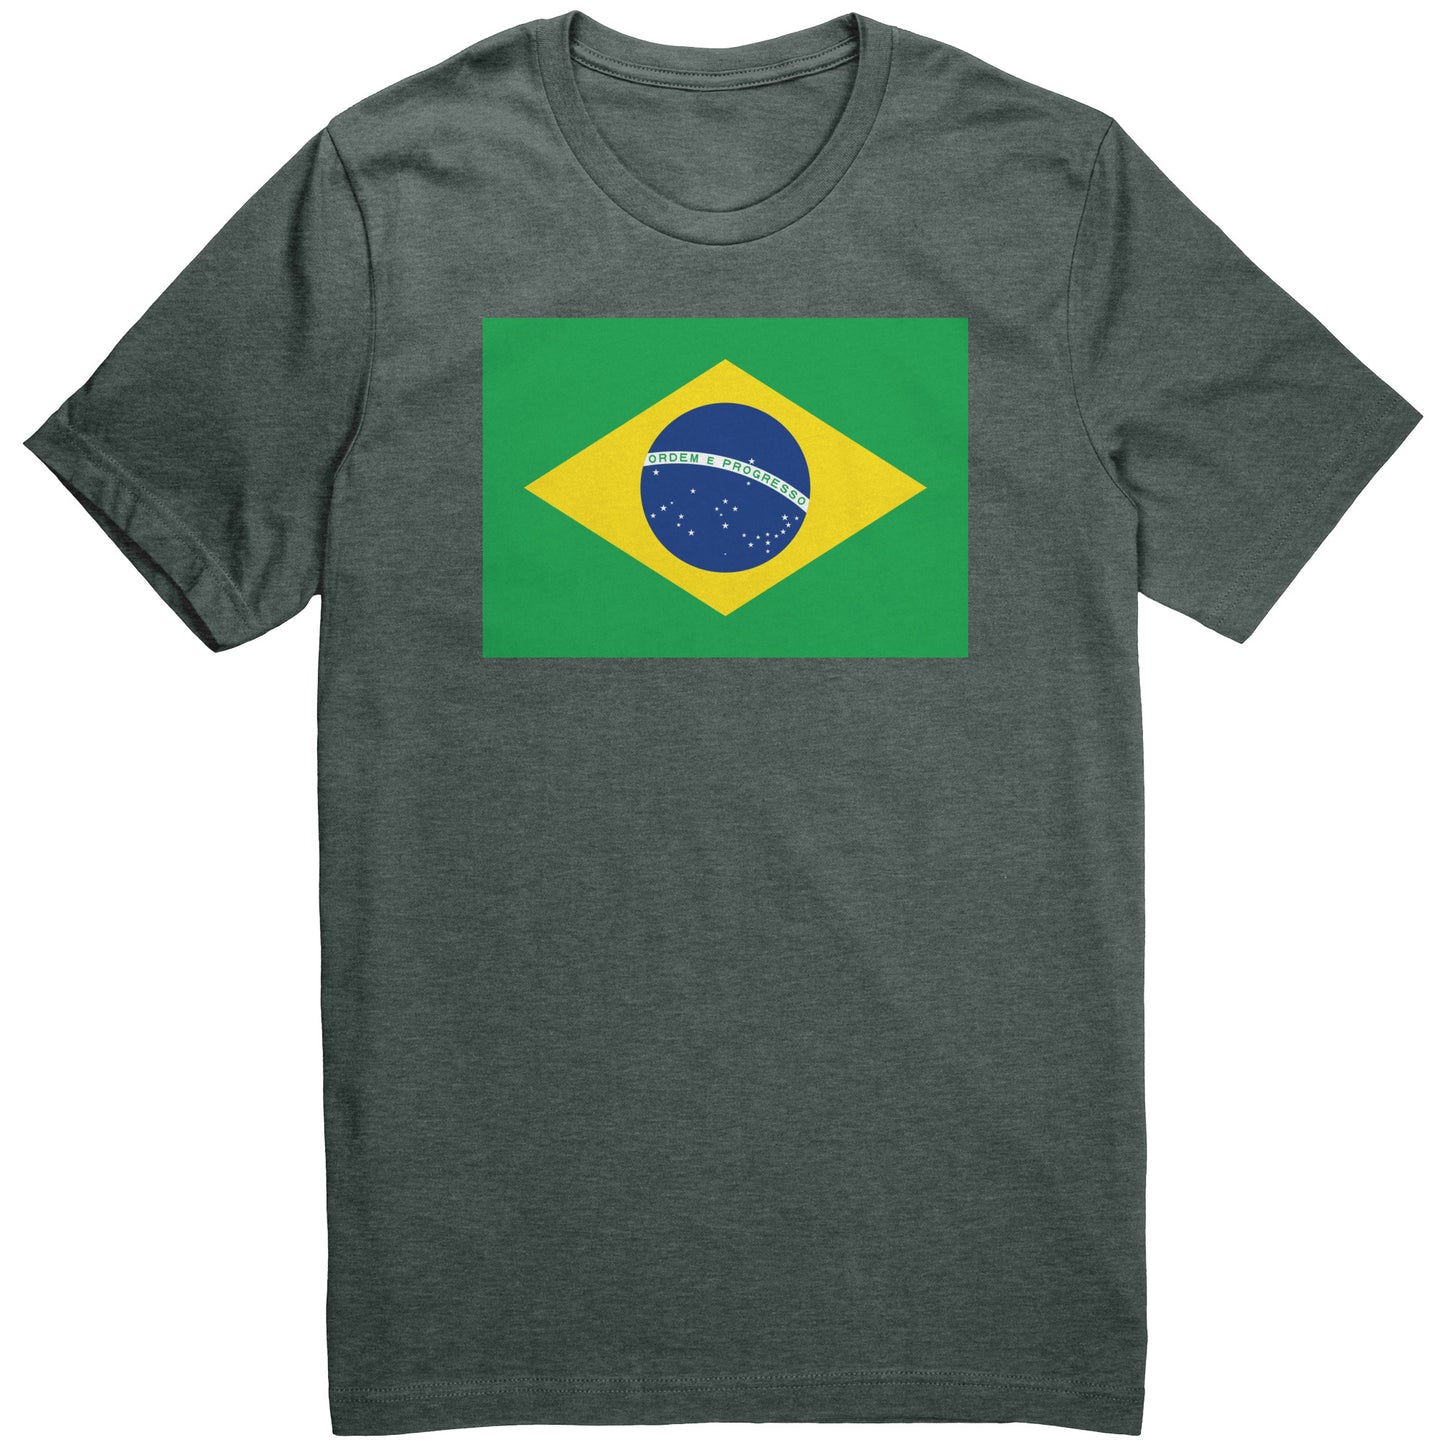 The Flag Of Brazil